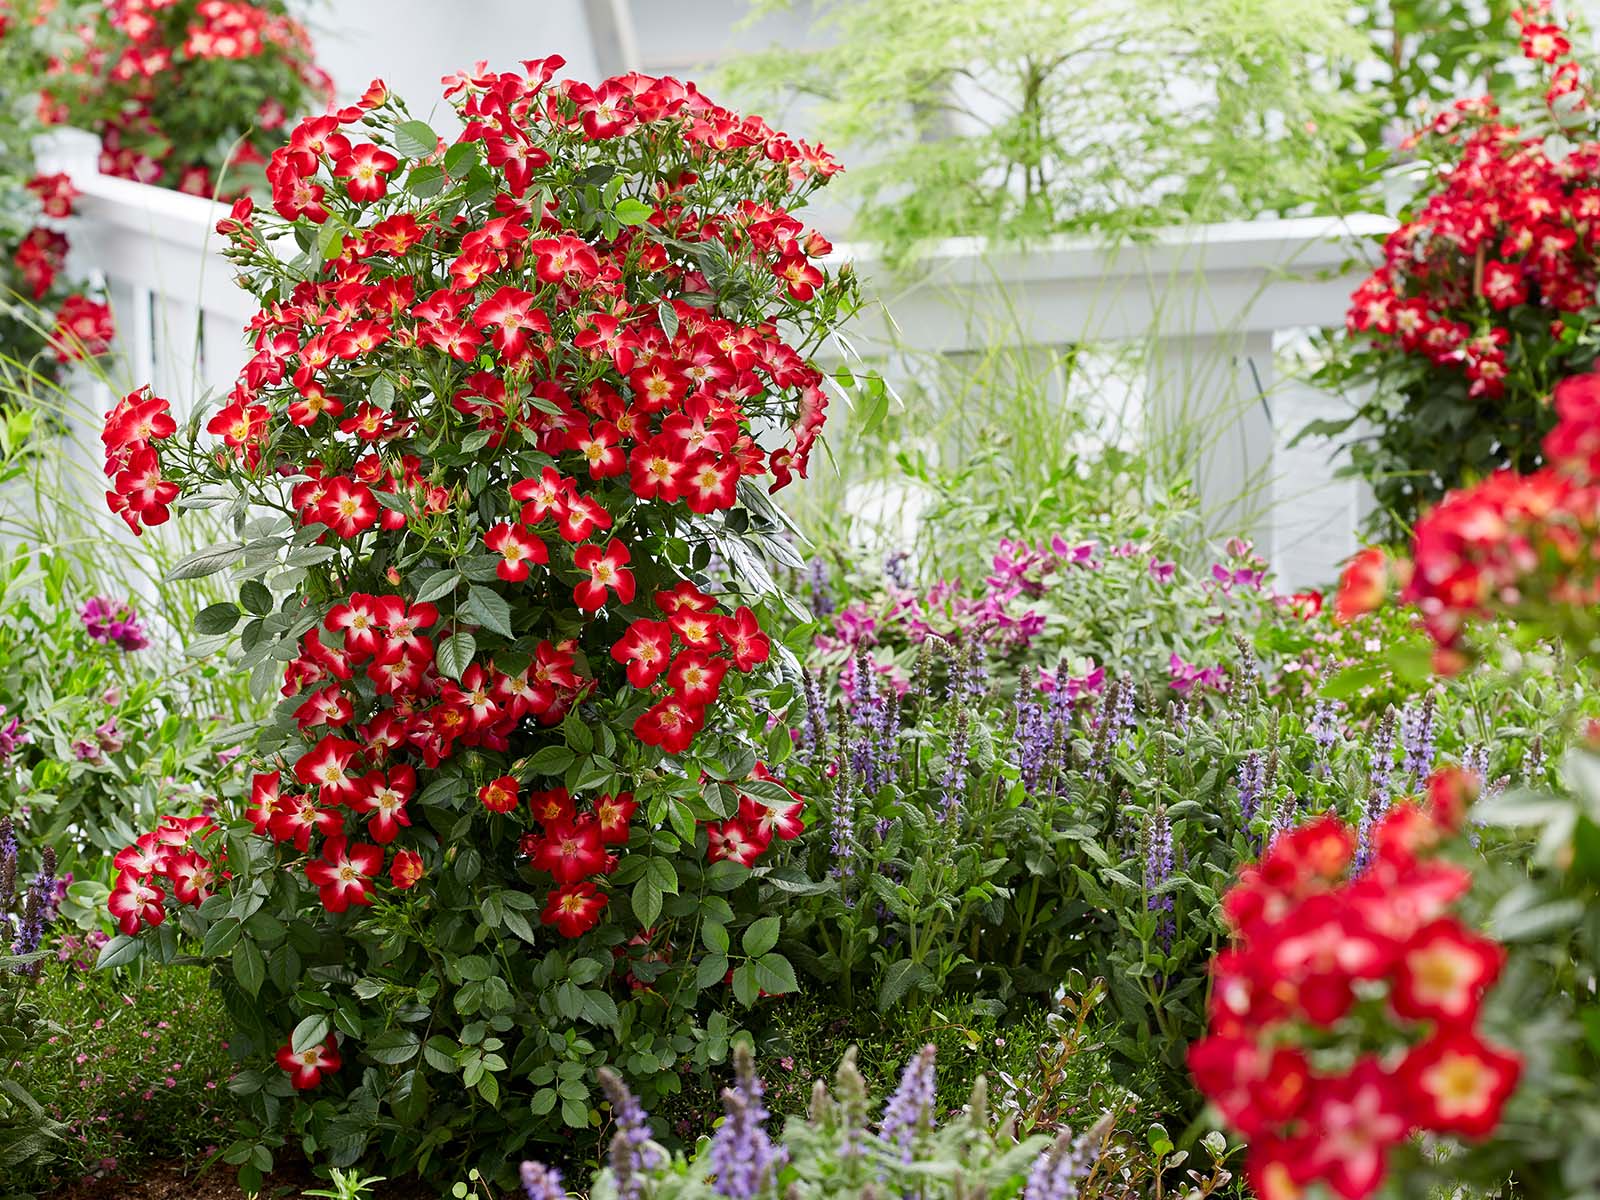 Rose Everglow Ruby Garden - on Thursd